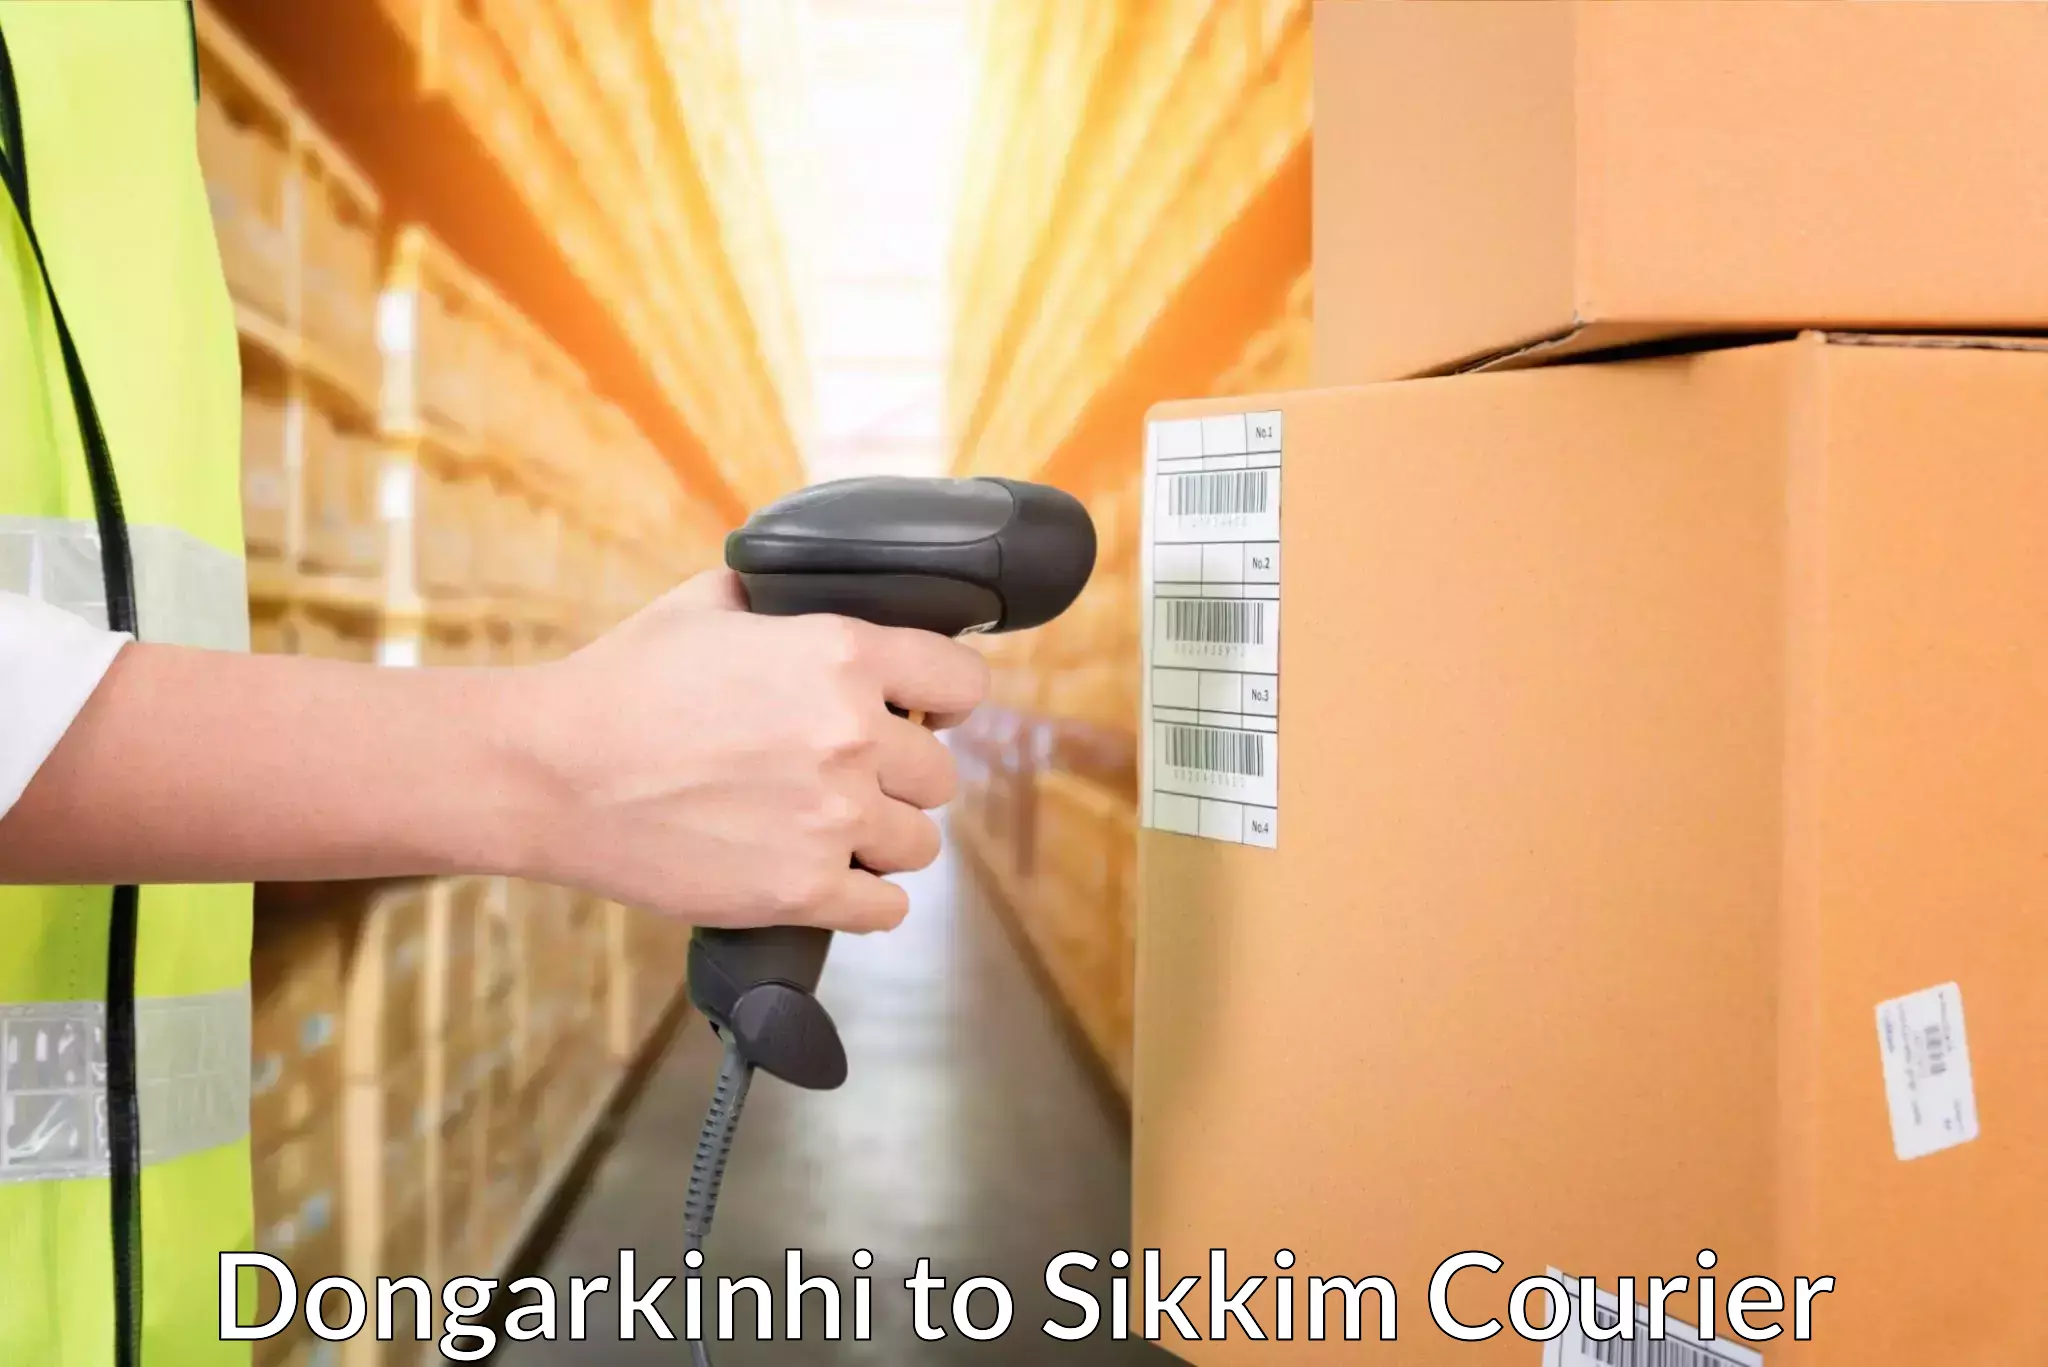 Bulk shipping discounts Dongarkinhi to Pelling